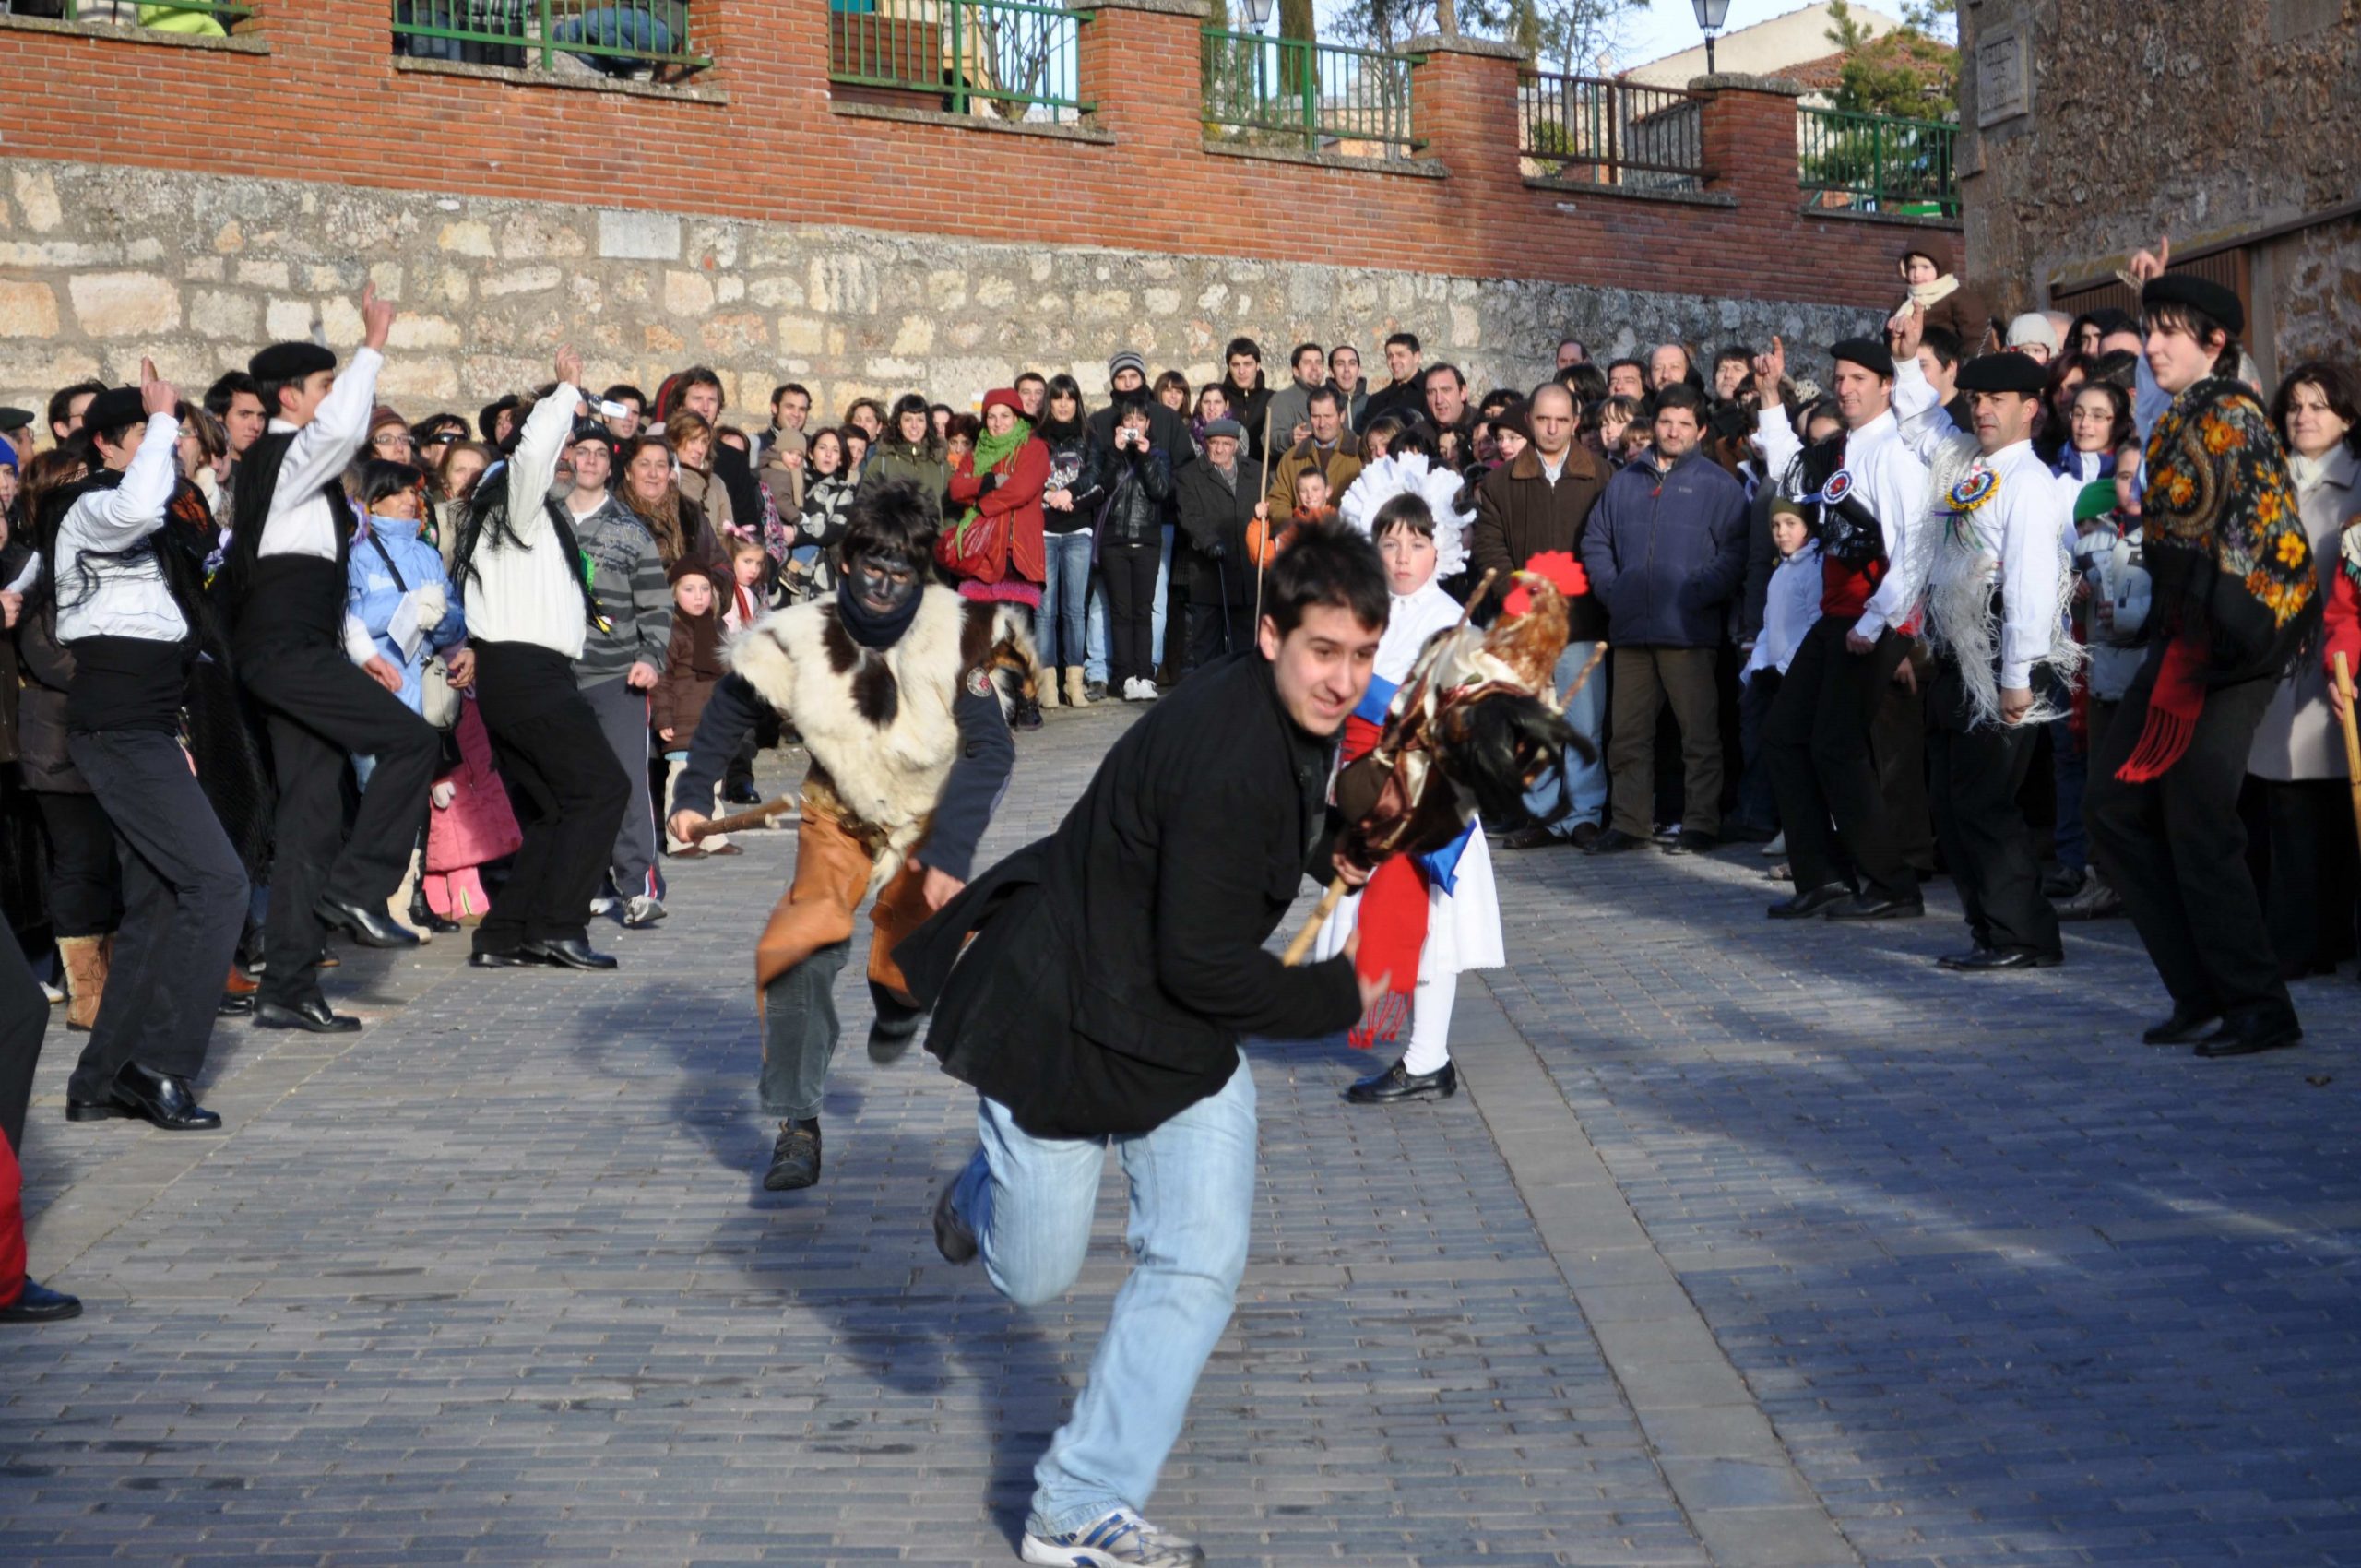 04 Corriendo el Gallo. Música, danzas y coplas al gallo en el Carnaval de Mecerreyes, Burgos